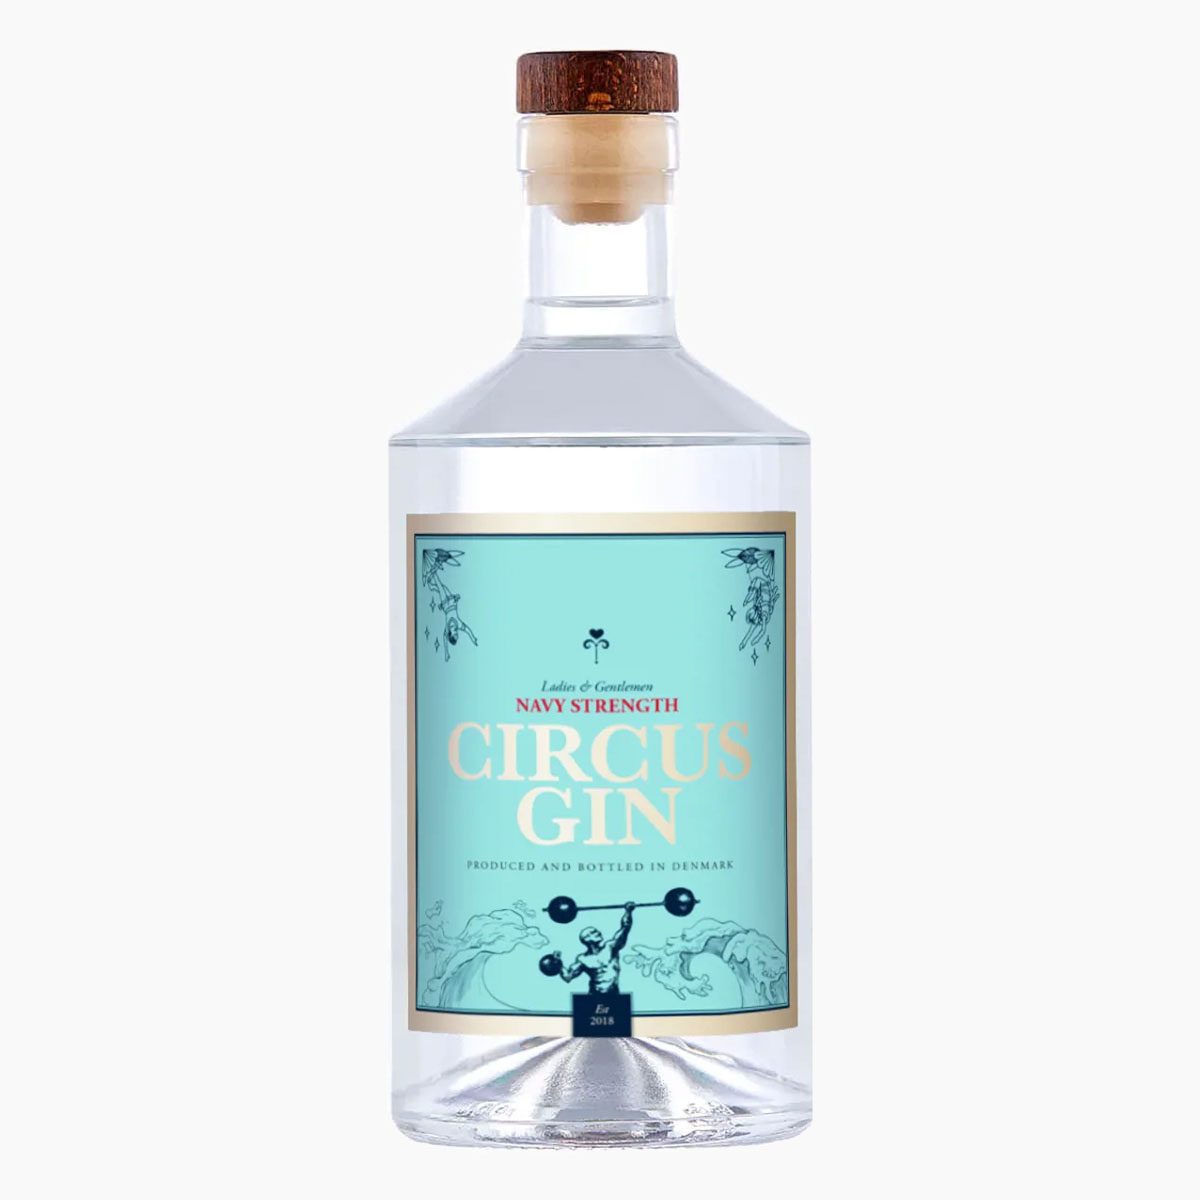 Brug Circus Gin - Navy Strength Gin til en forbedret oplevelse